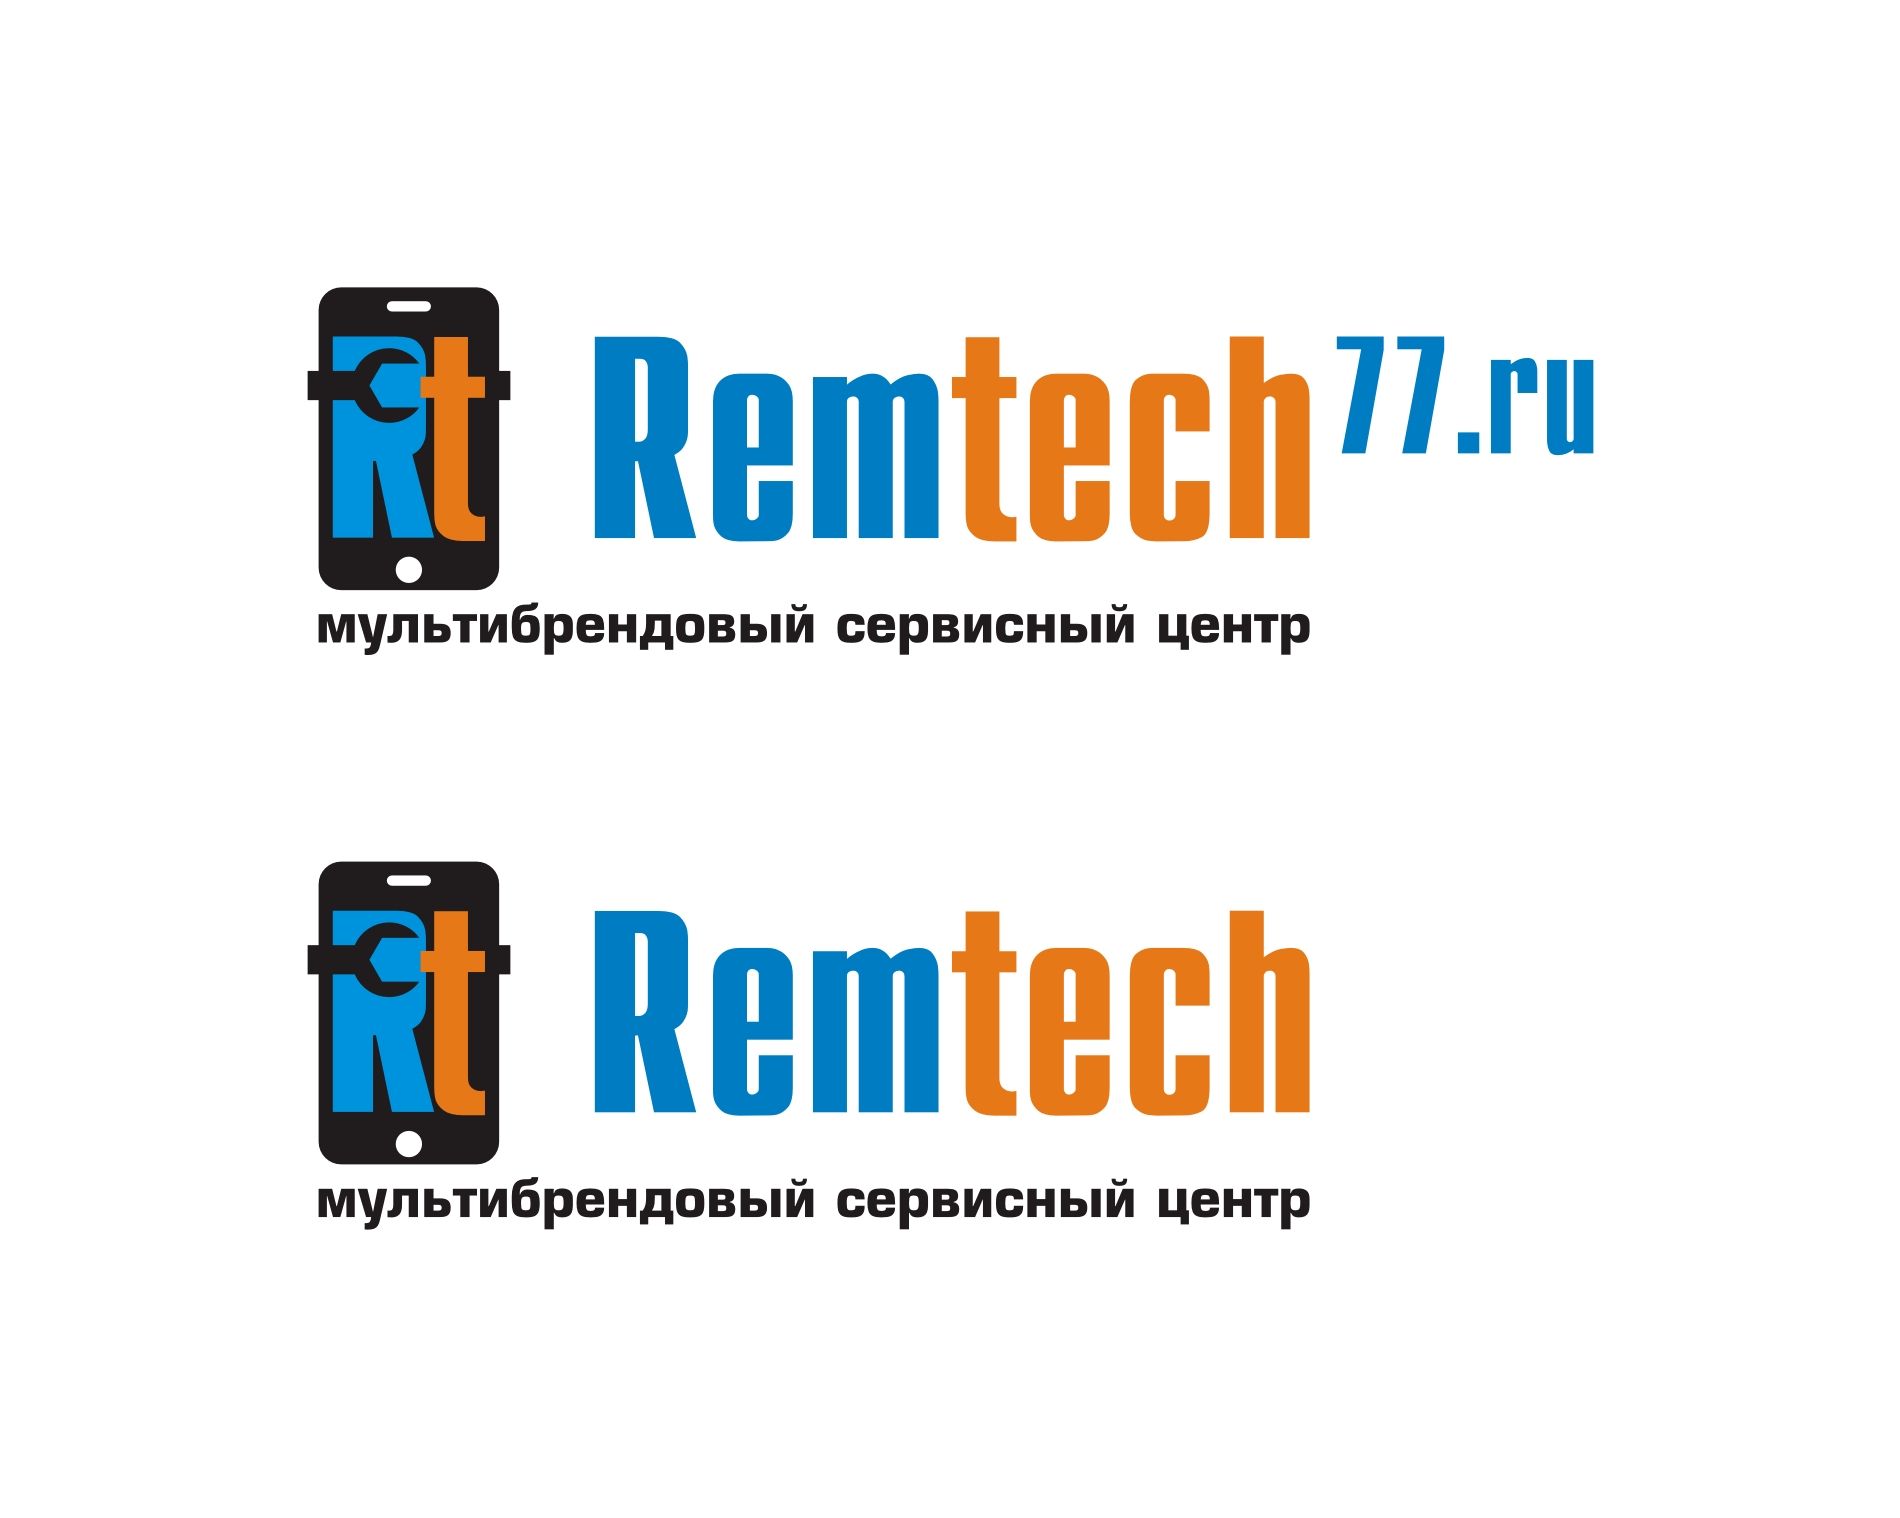 Лого и фирменный стиль для Логотип для СЦ remtech77.ru - дизайнер LedZ